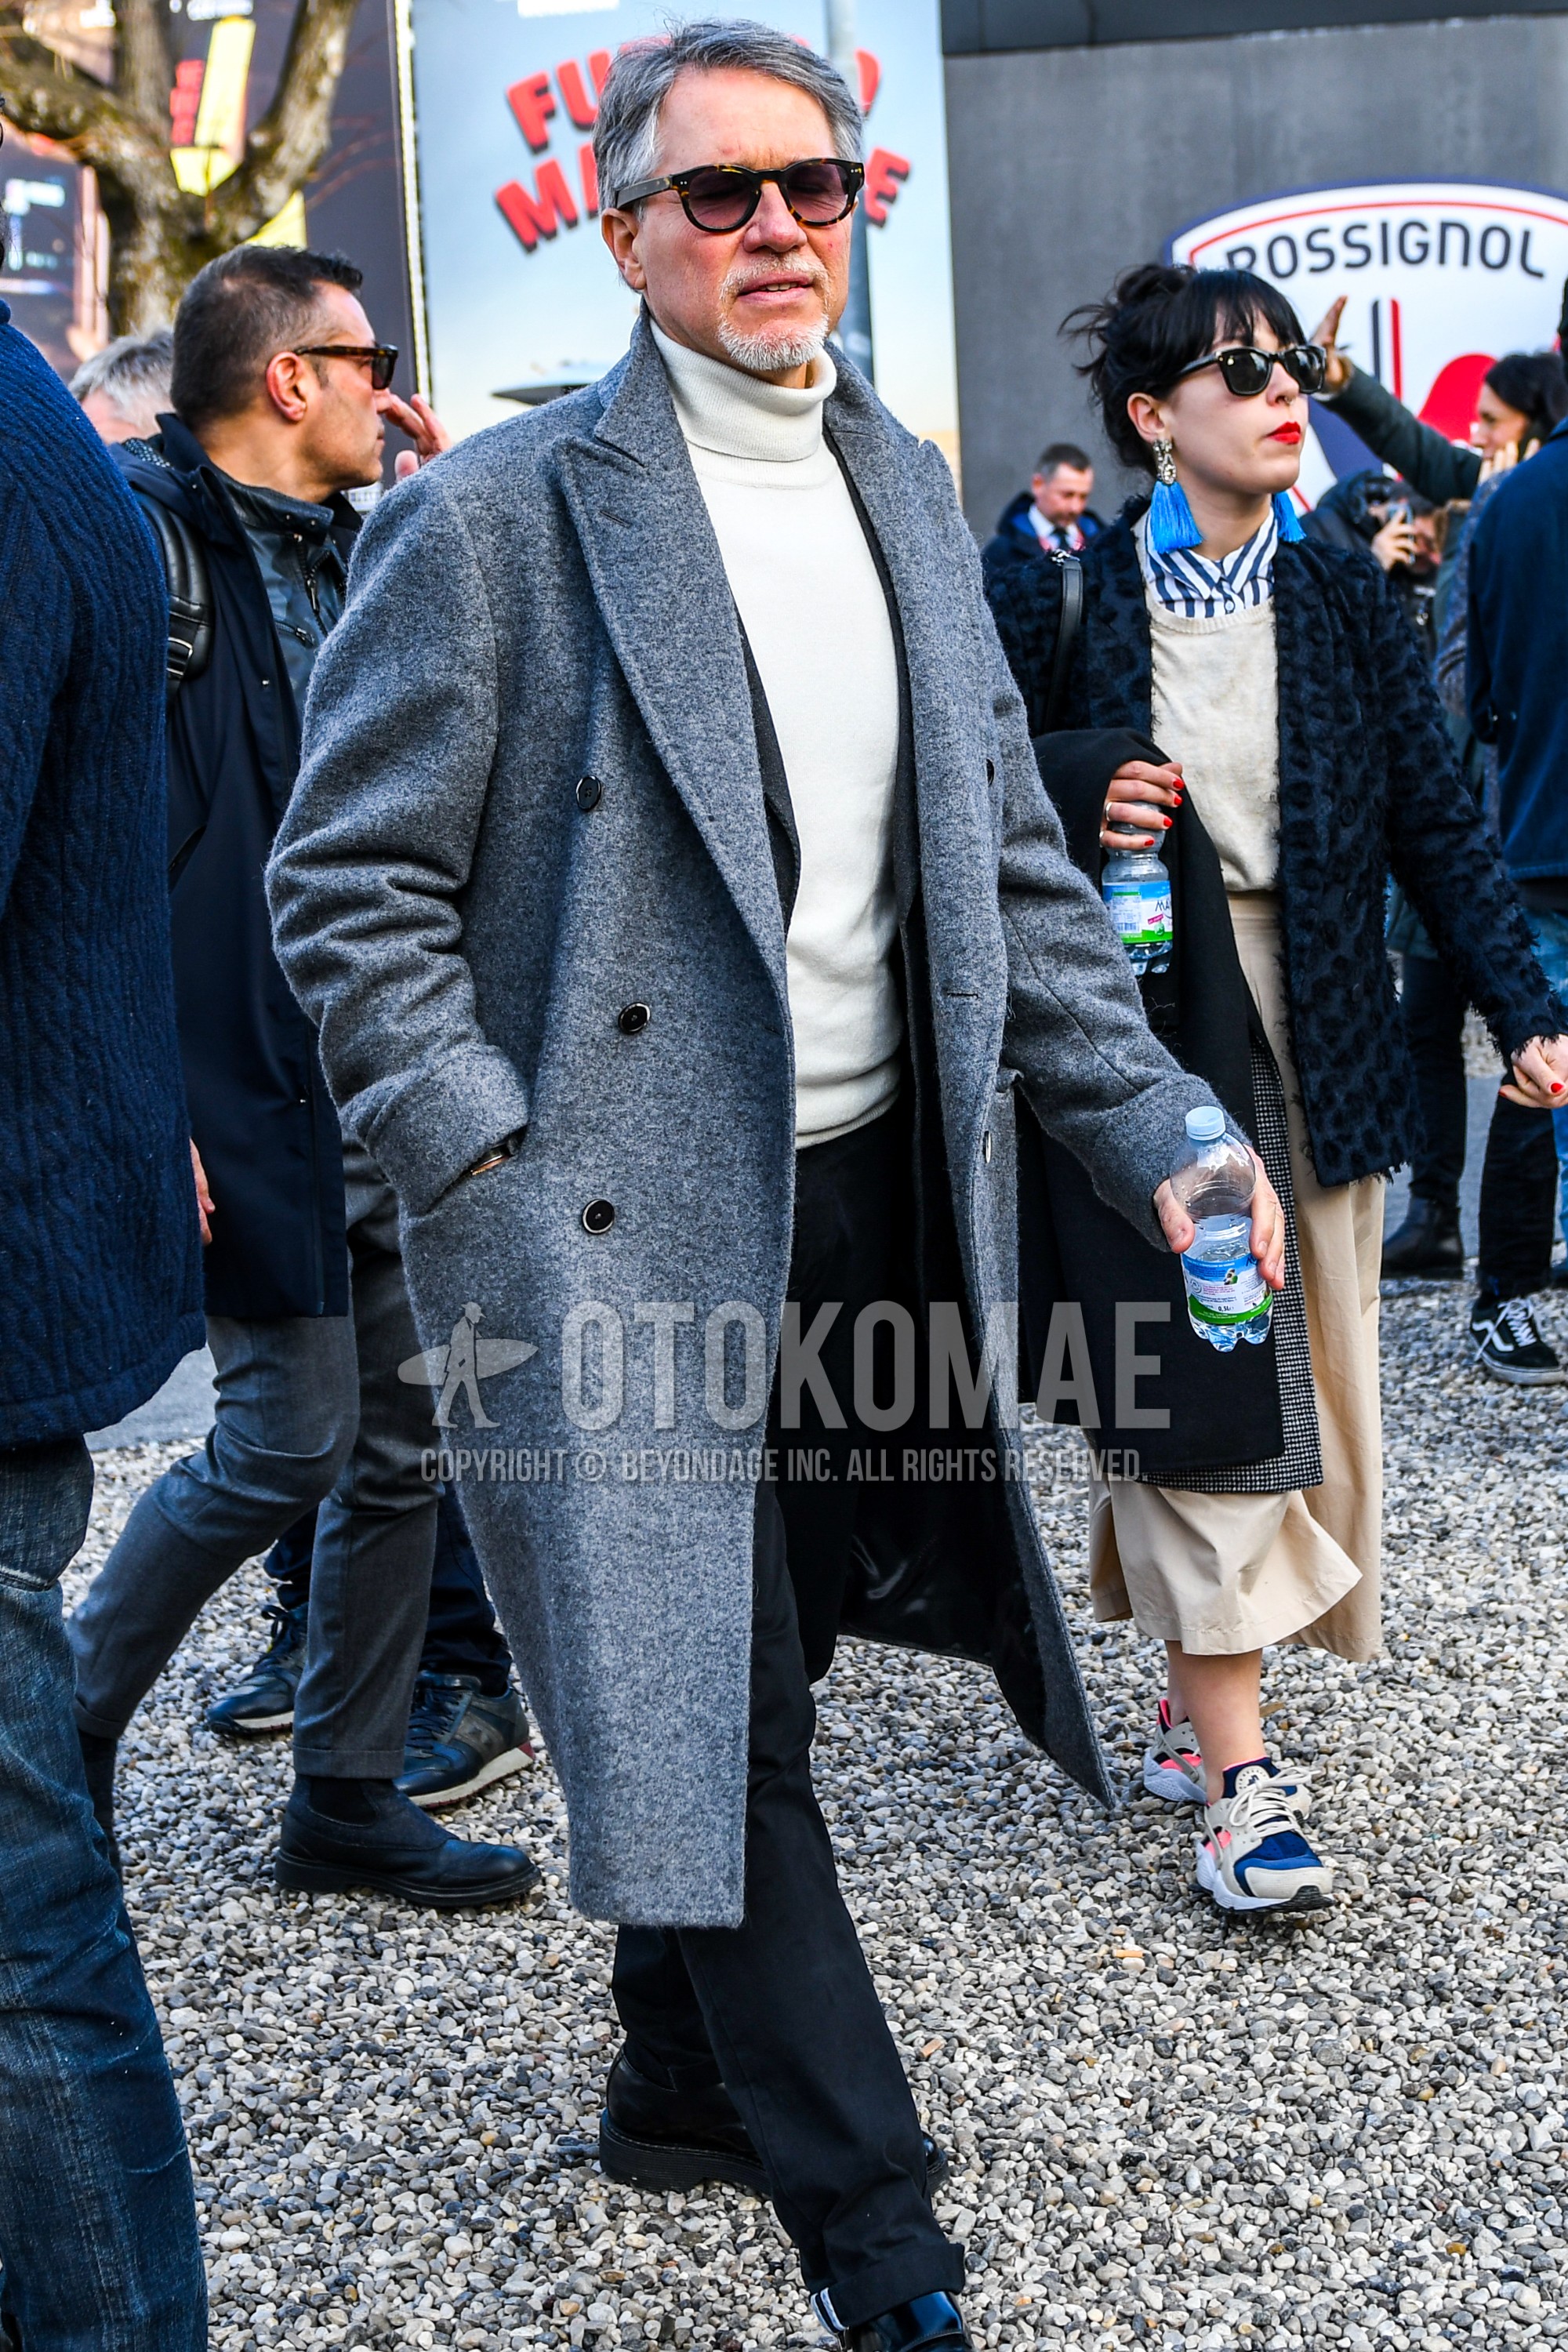 Men's autumn winter outfit with plain sunglasses, gray plain chester coat, white plain turtleneck knit, gray plain tailored jacket, black plain denim/jeans.